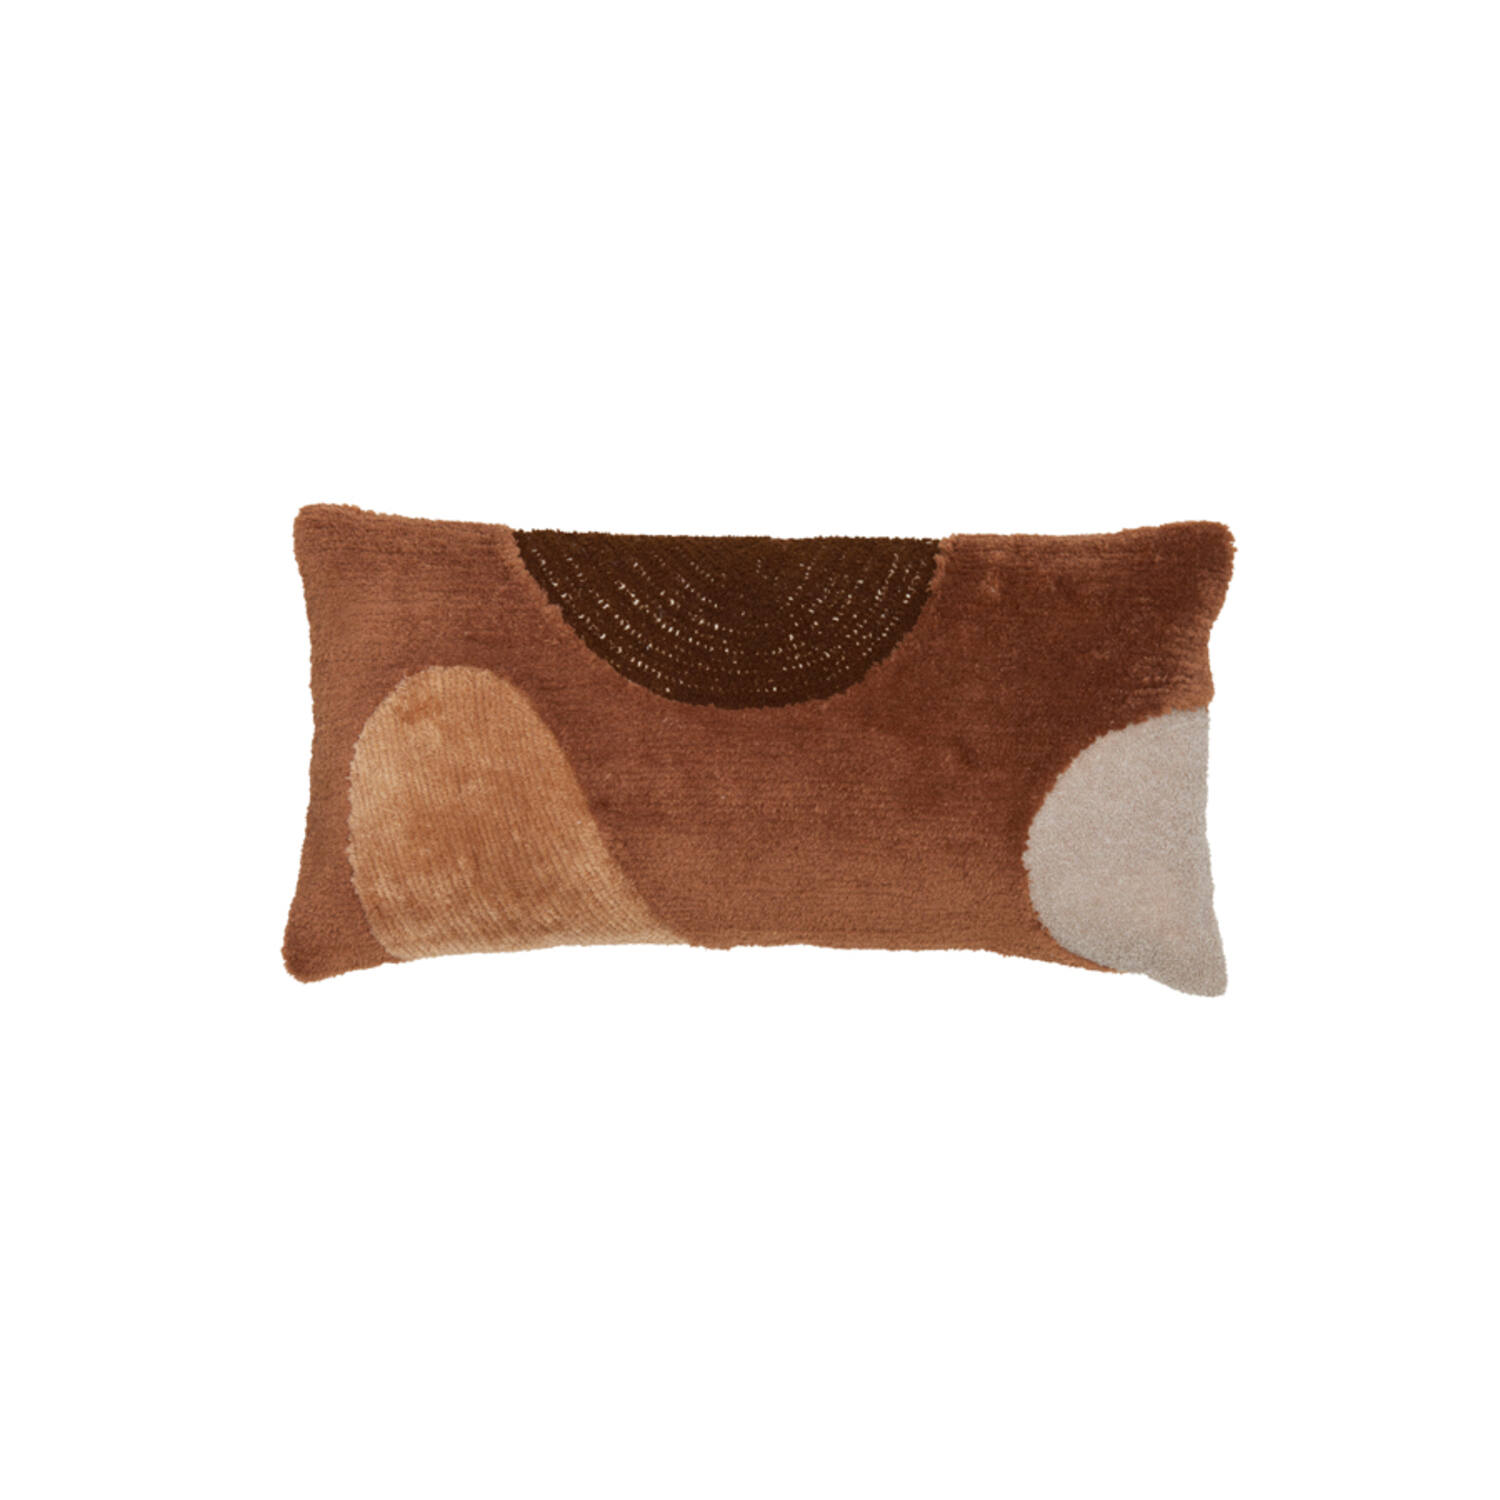 Cushion 60x30 cm CANAZEI terra+brown+sand